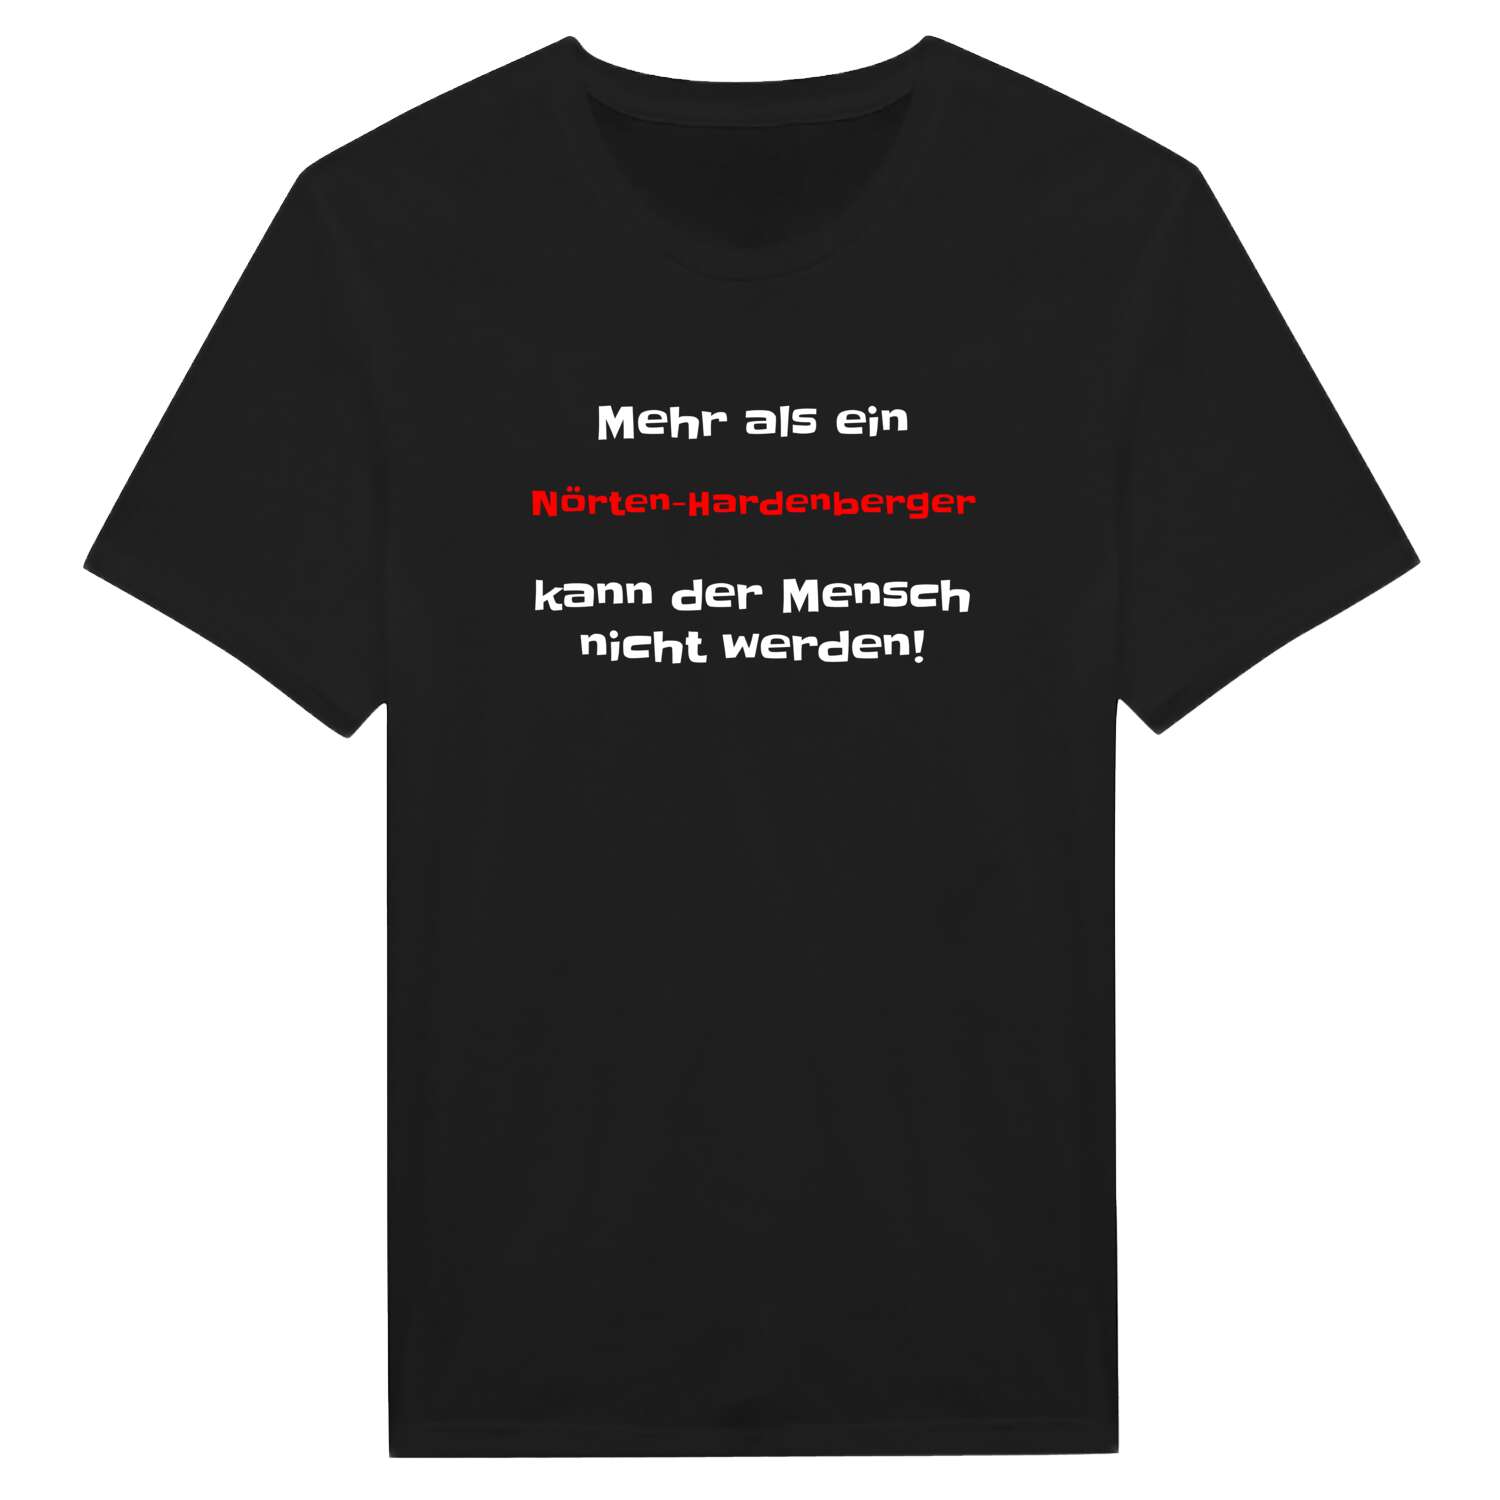 Nörten-Hardenberg T-Shirt »Mehr als ein«